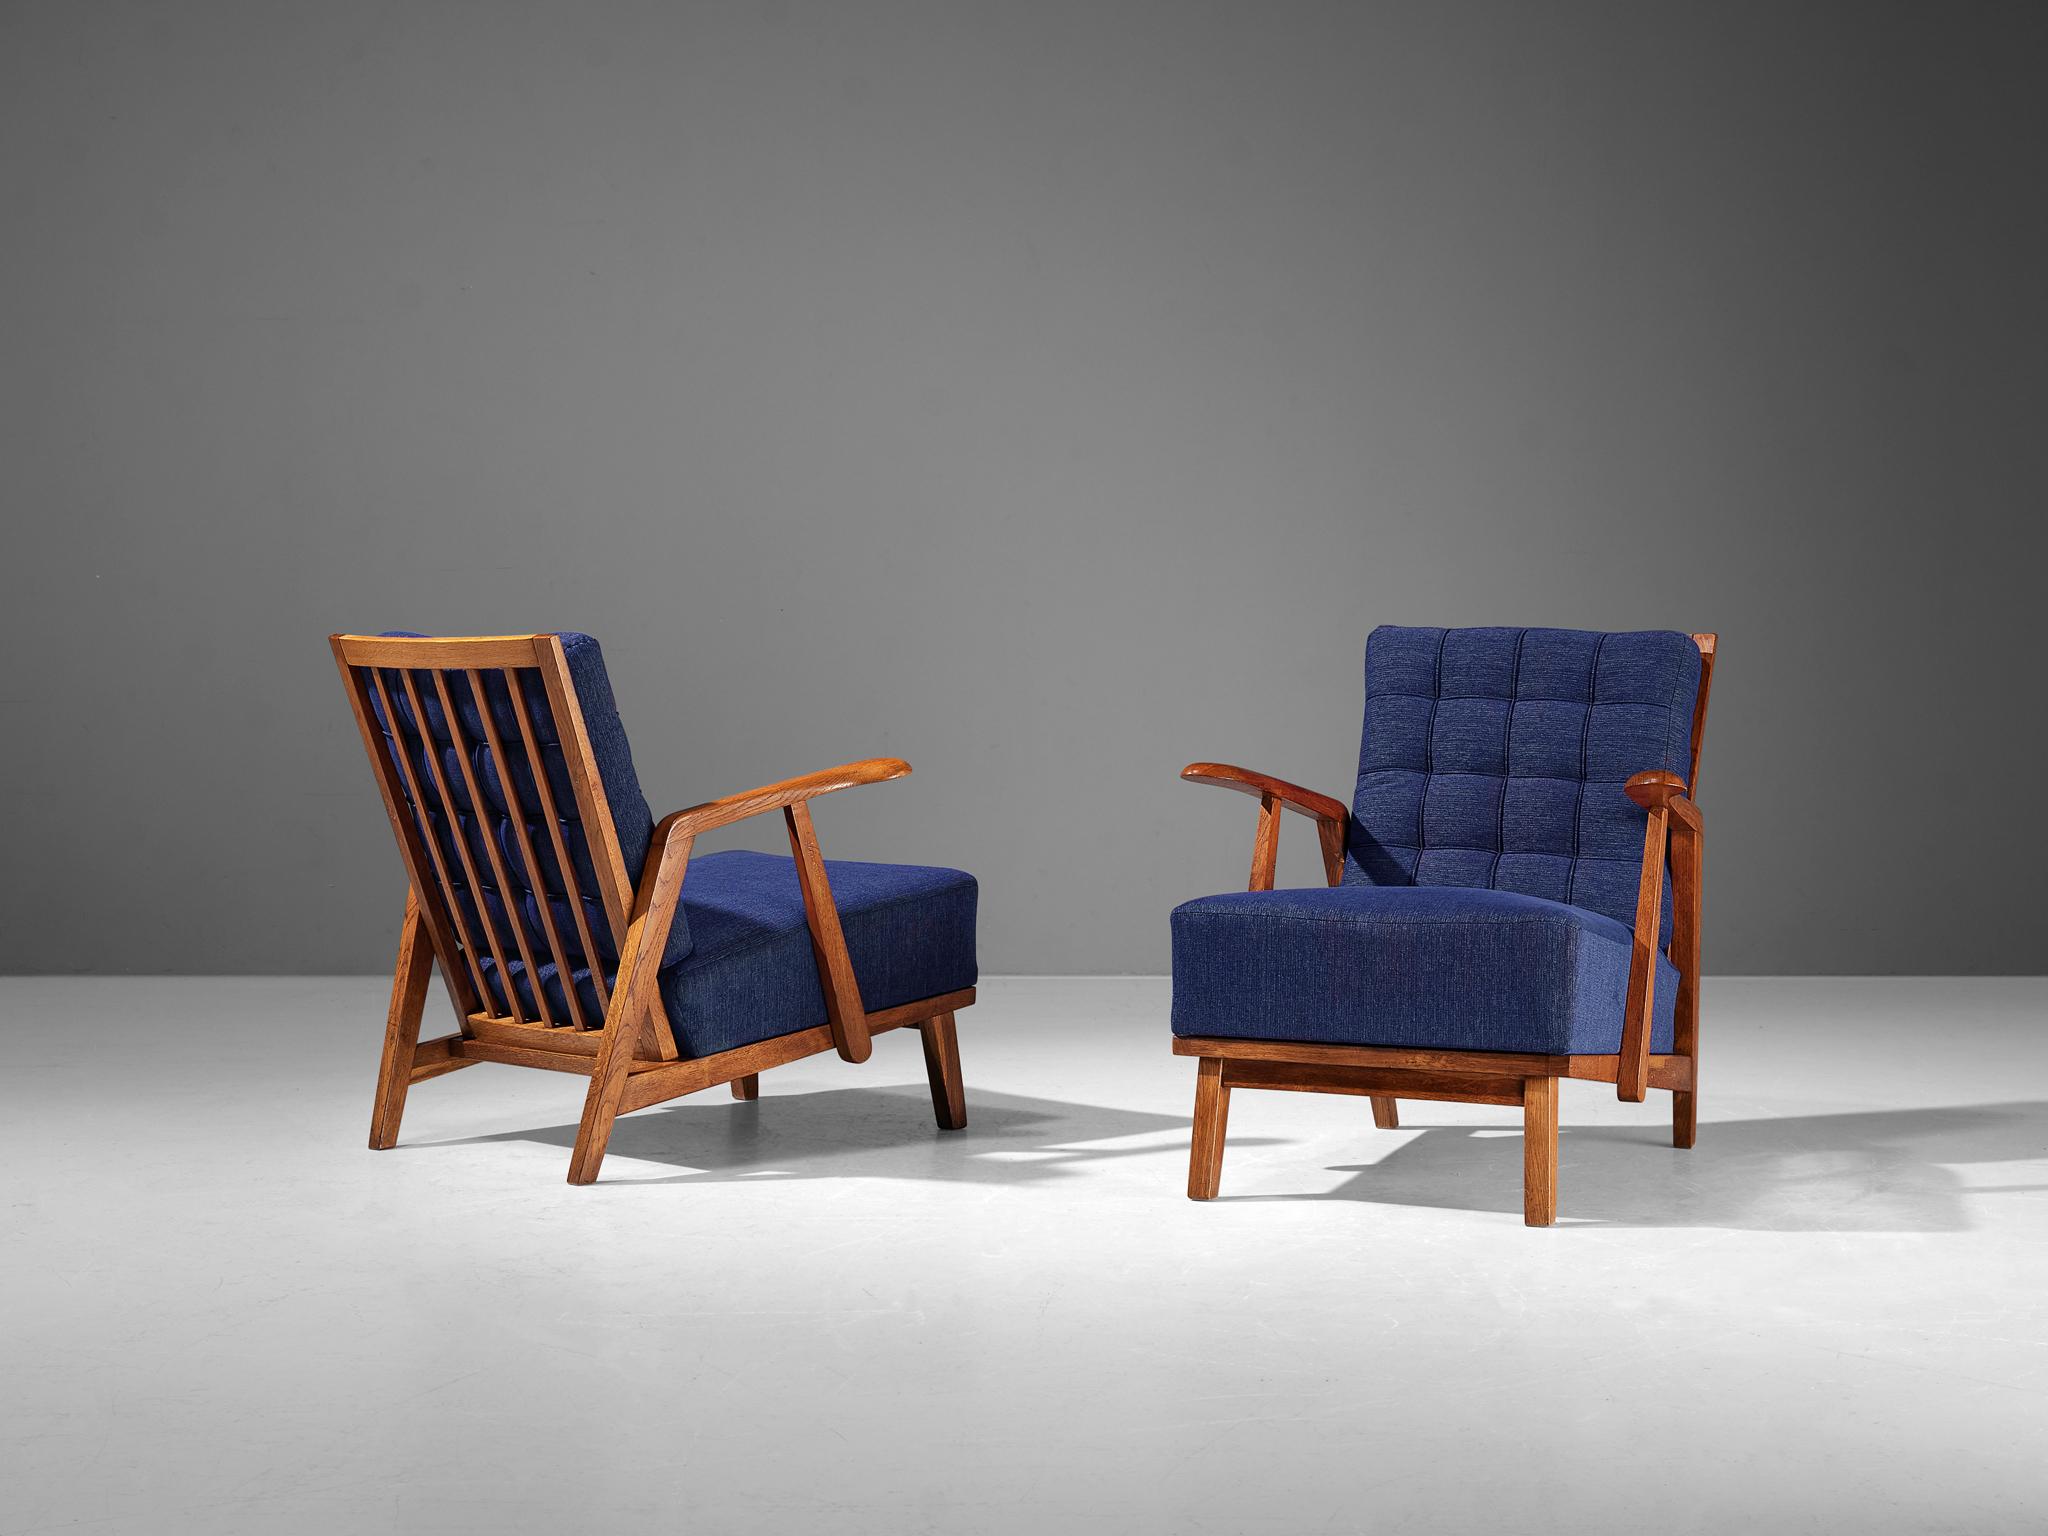 Paire de chaises longues, chêne, tissu, République tchèque, années 1950

Ces chaises longues magnifiquement conçues présentent une construction remarquable grâce aux éléments sculptés que l'on peut discerner dans le cadre en bois. Les accoudoirs